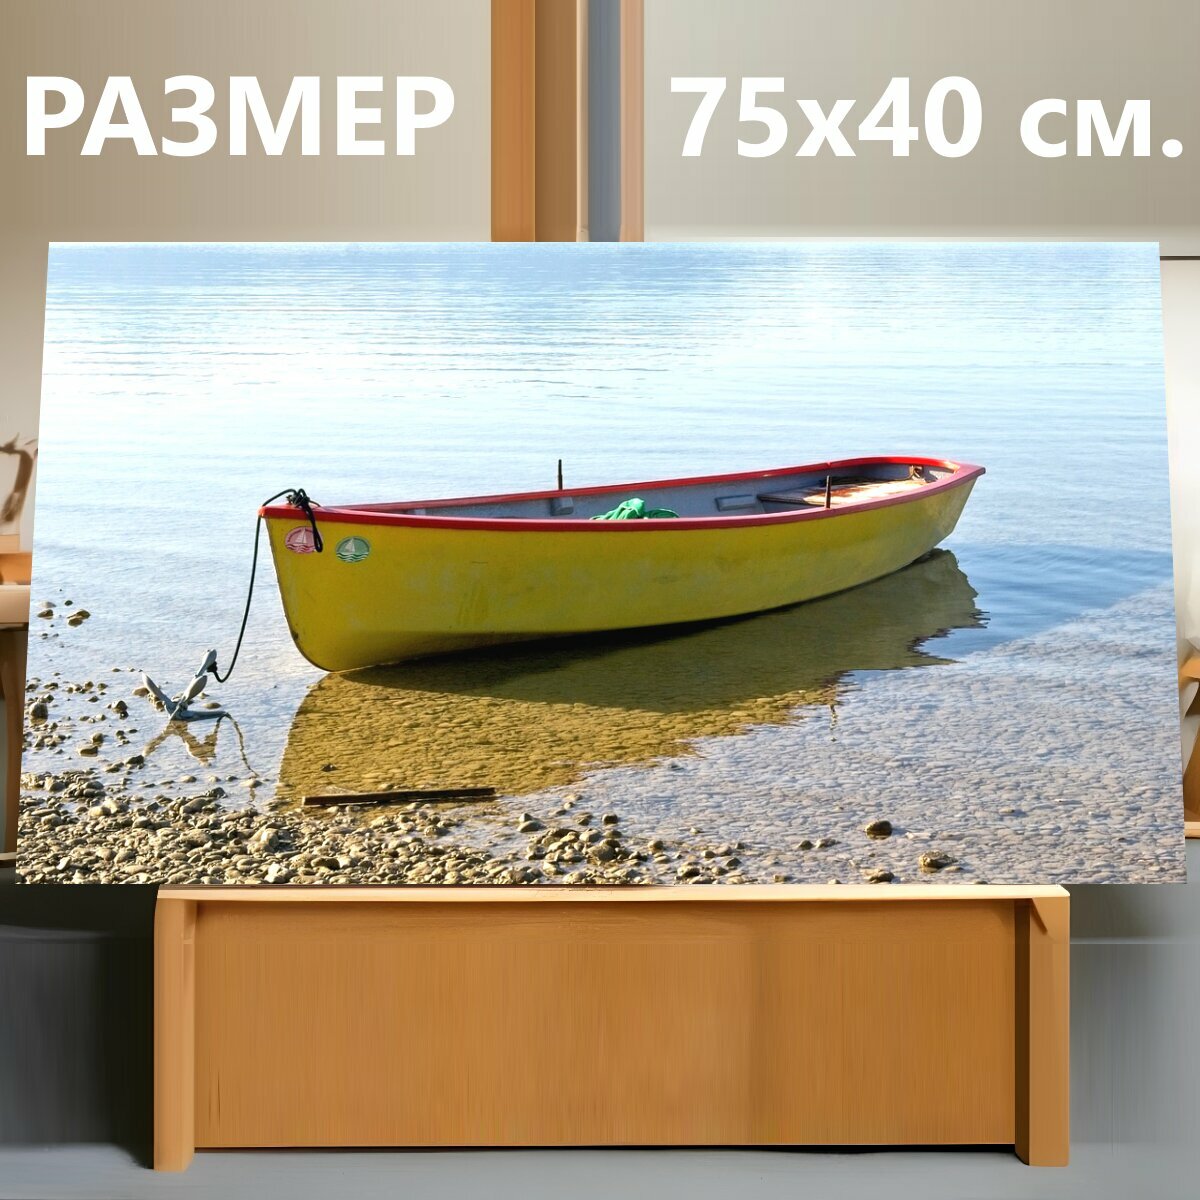 Картина на холсте "Лодка, берег реки, гребная лодка" на подрамнике 75х40 см. для интерьера